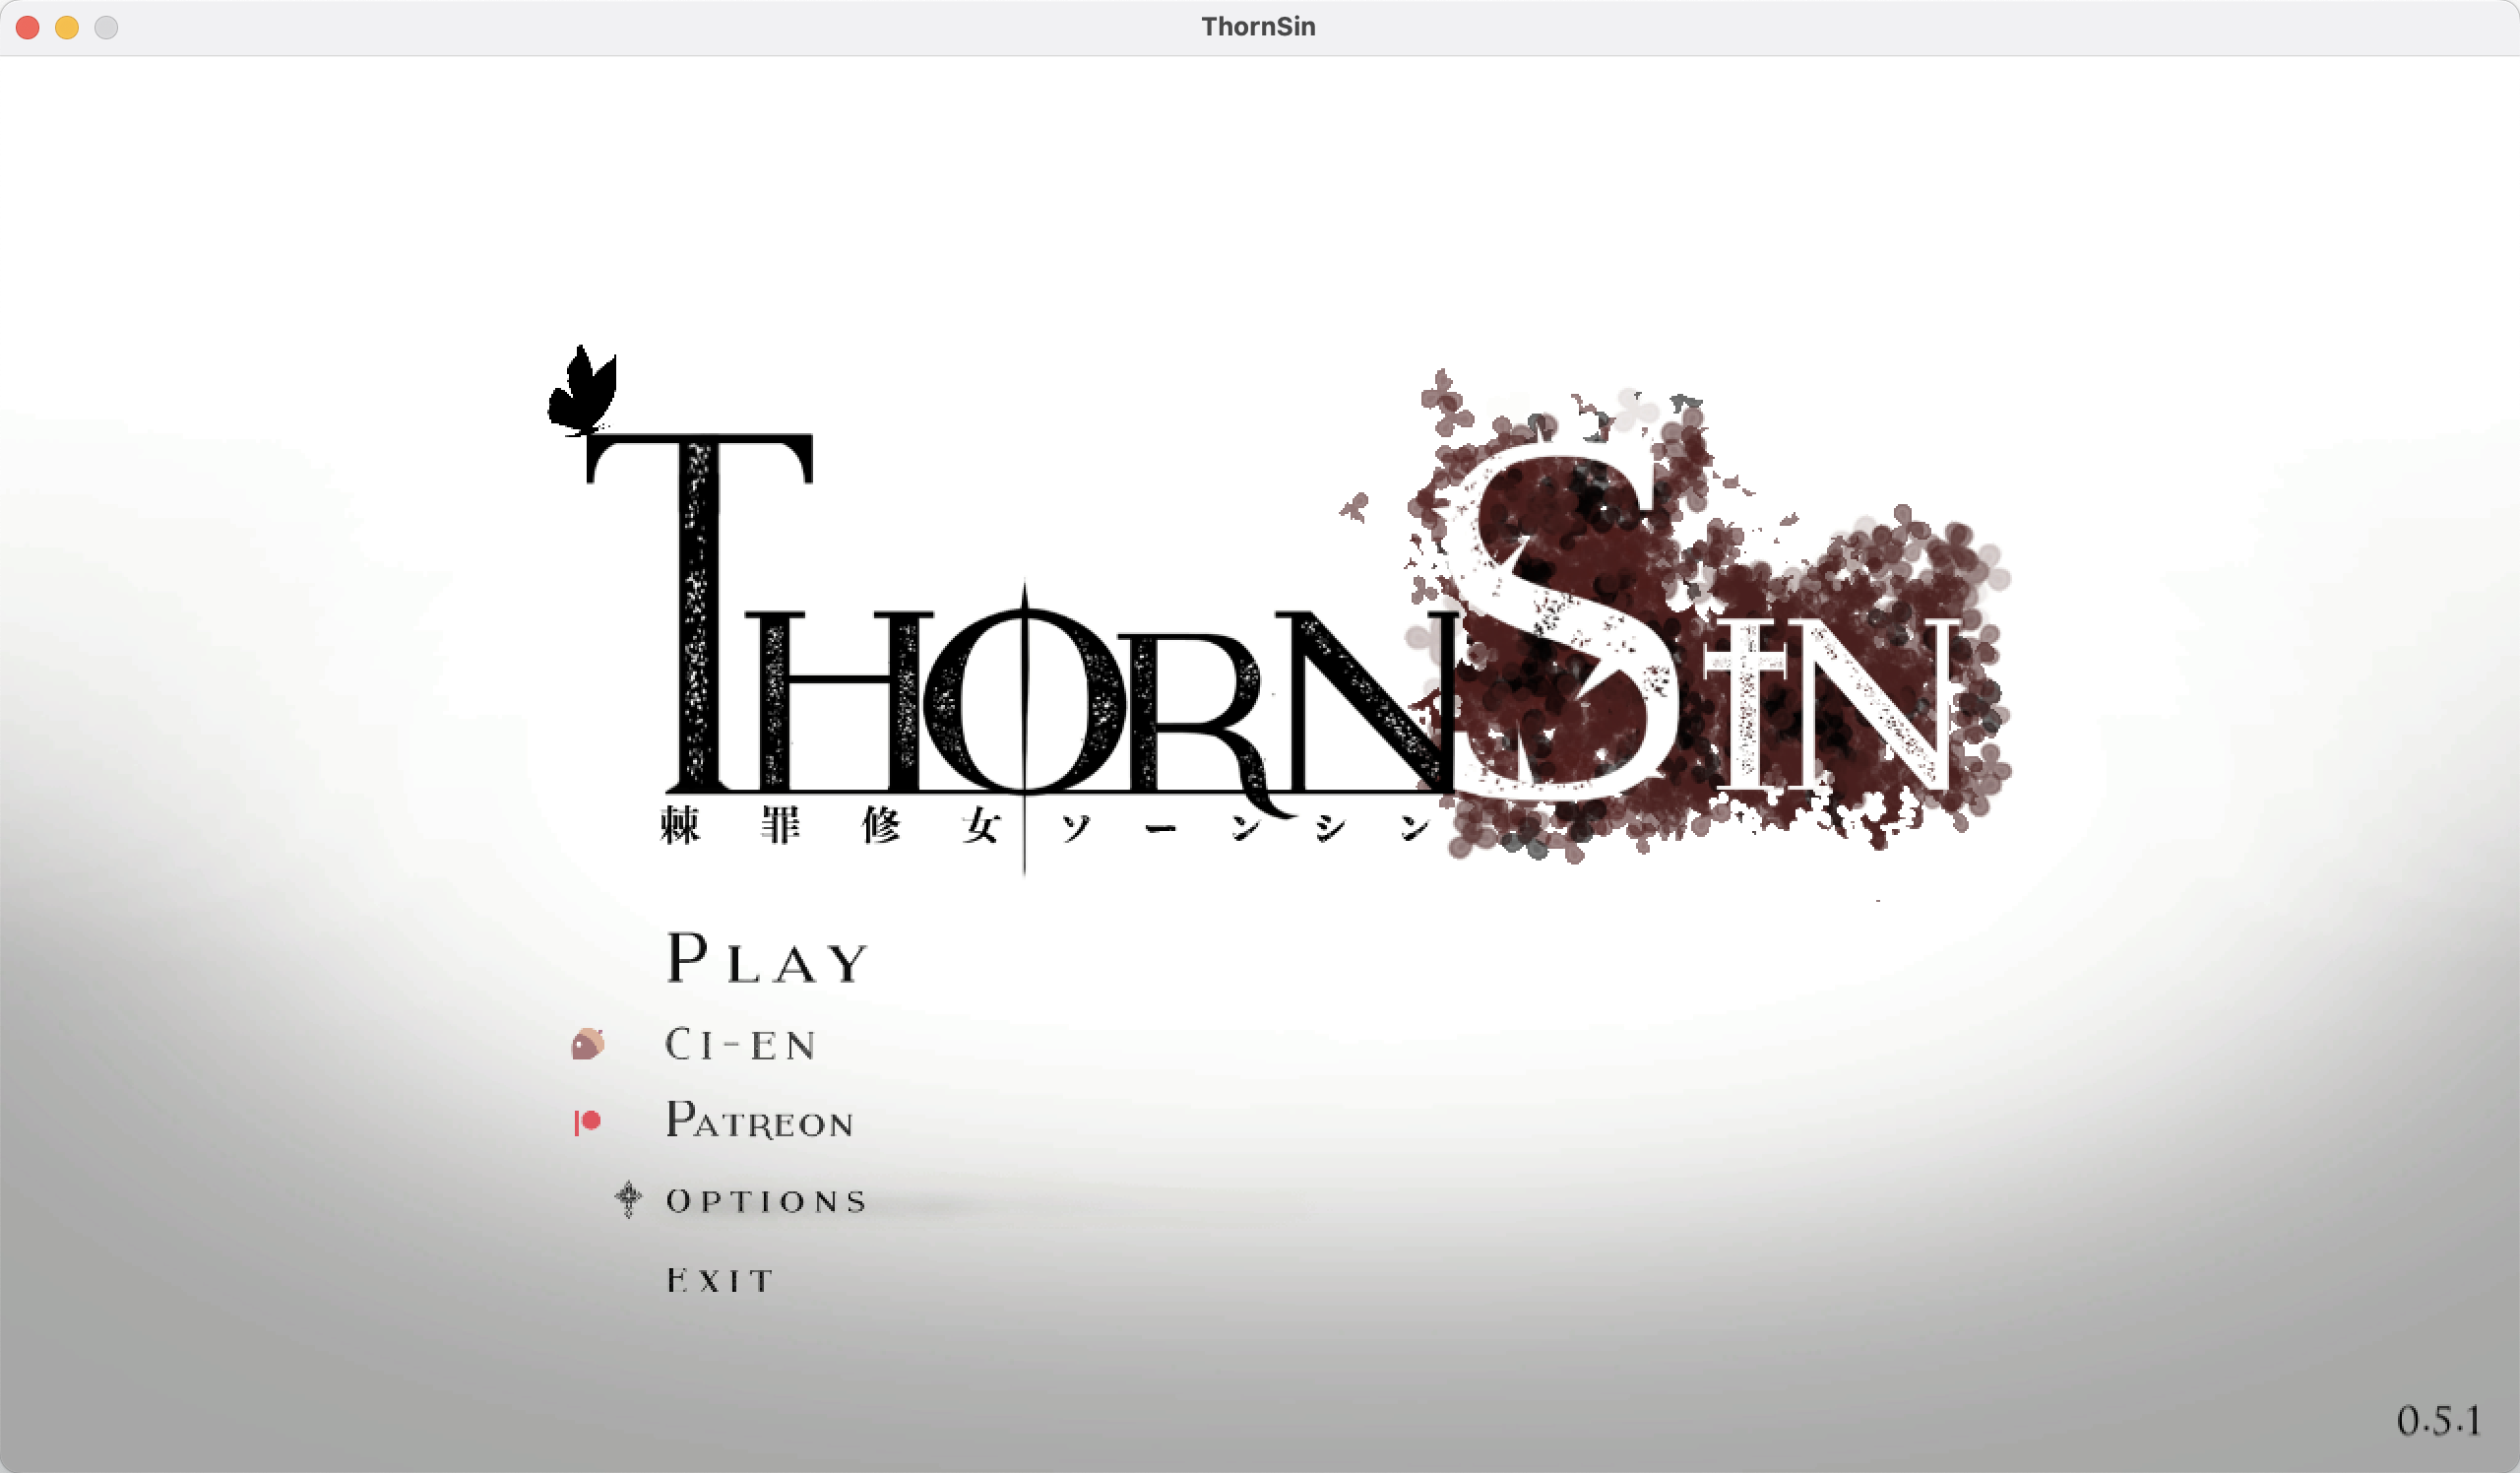 棘罪修女 for Mac ThornSin v0.5.1 中文移植版 含步兵插件 苹果电脑